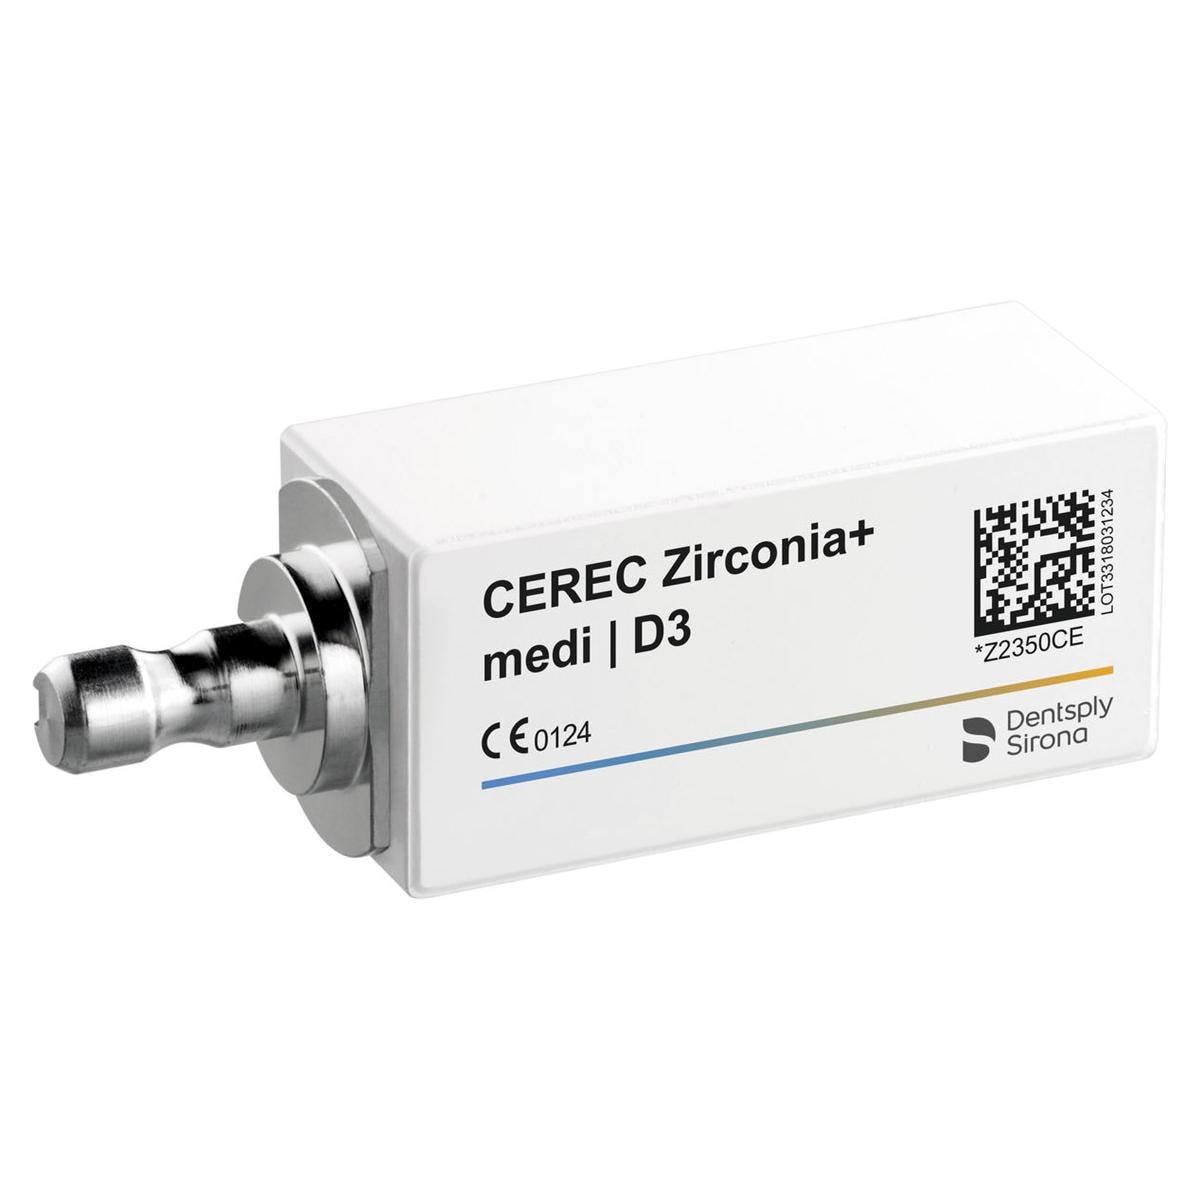 CEREC Zirconia+ medi - D3, 3 stuks